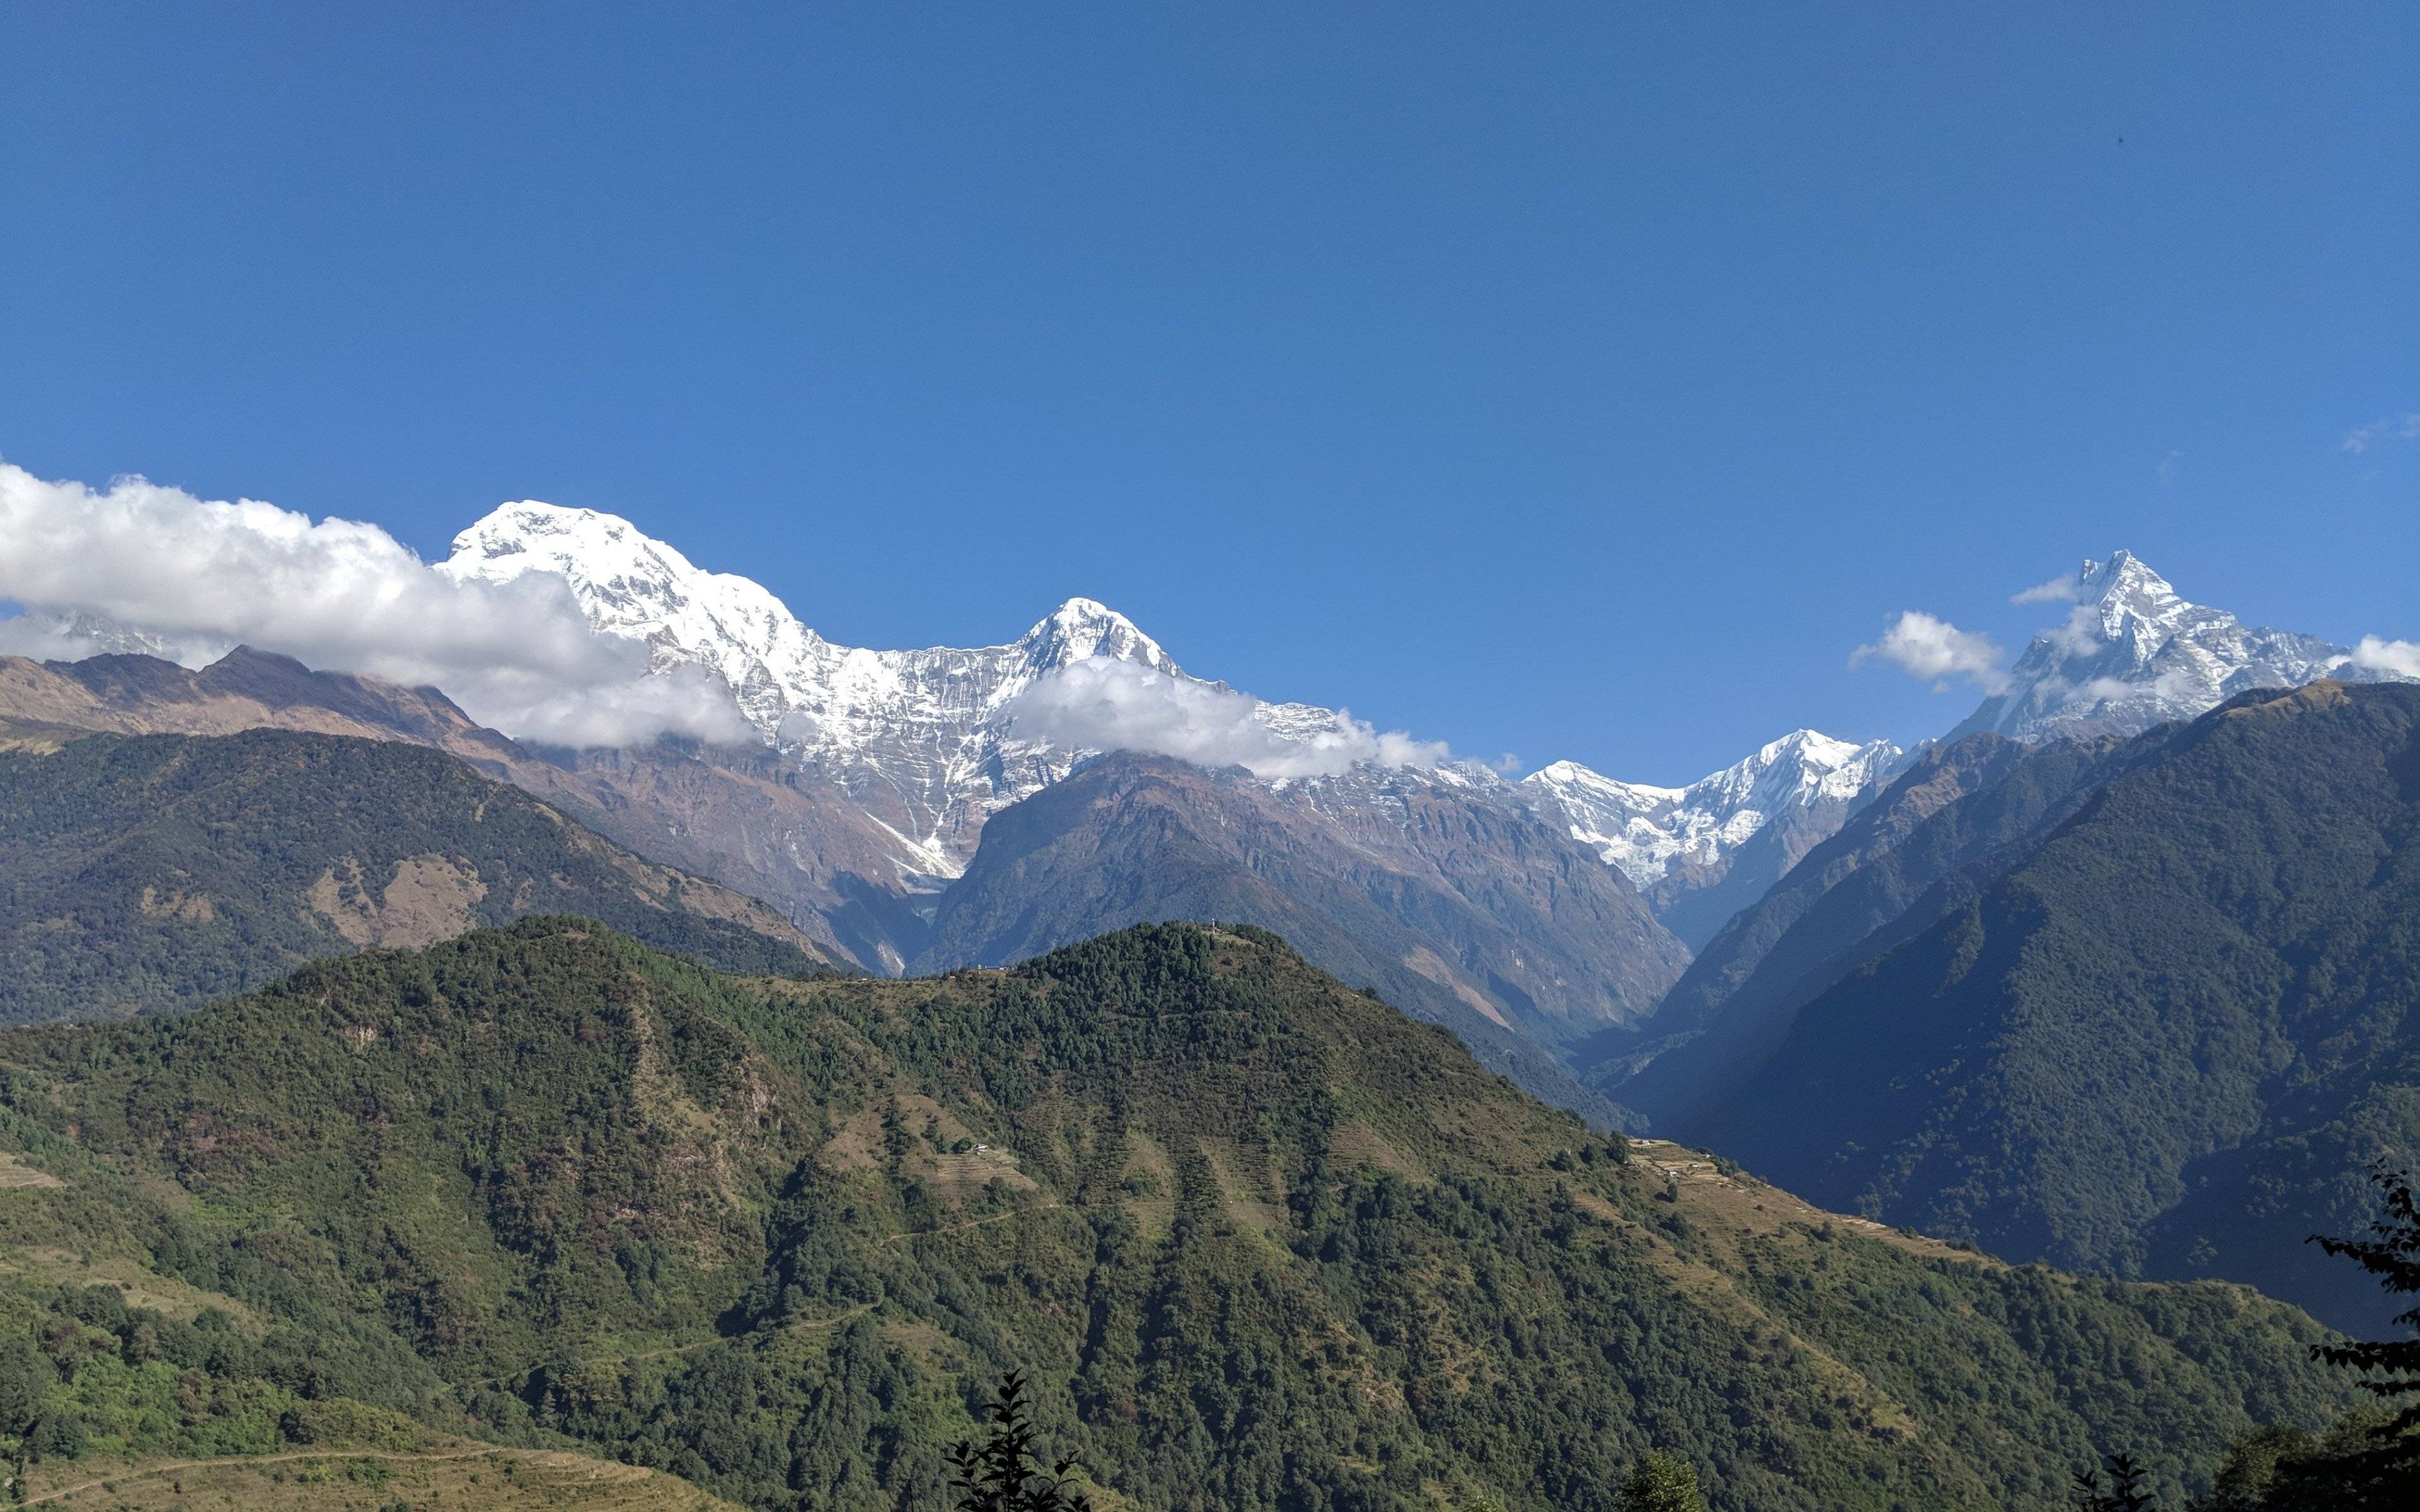 Fin du trek jusqu'à Pokhara